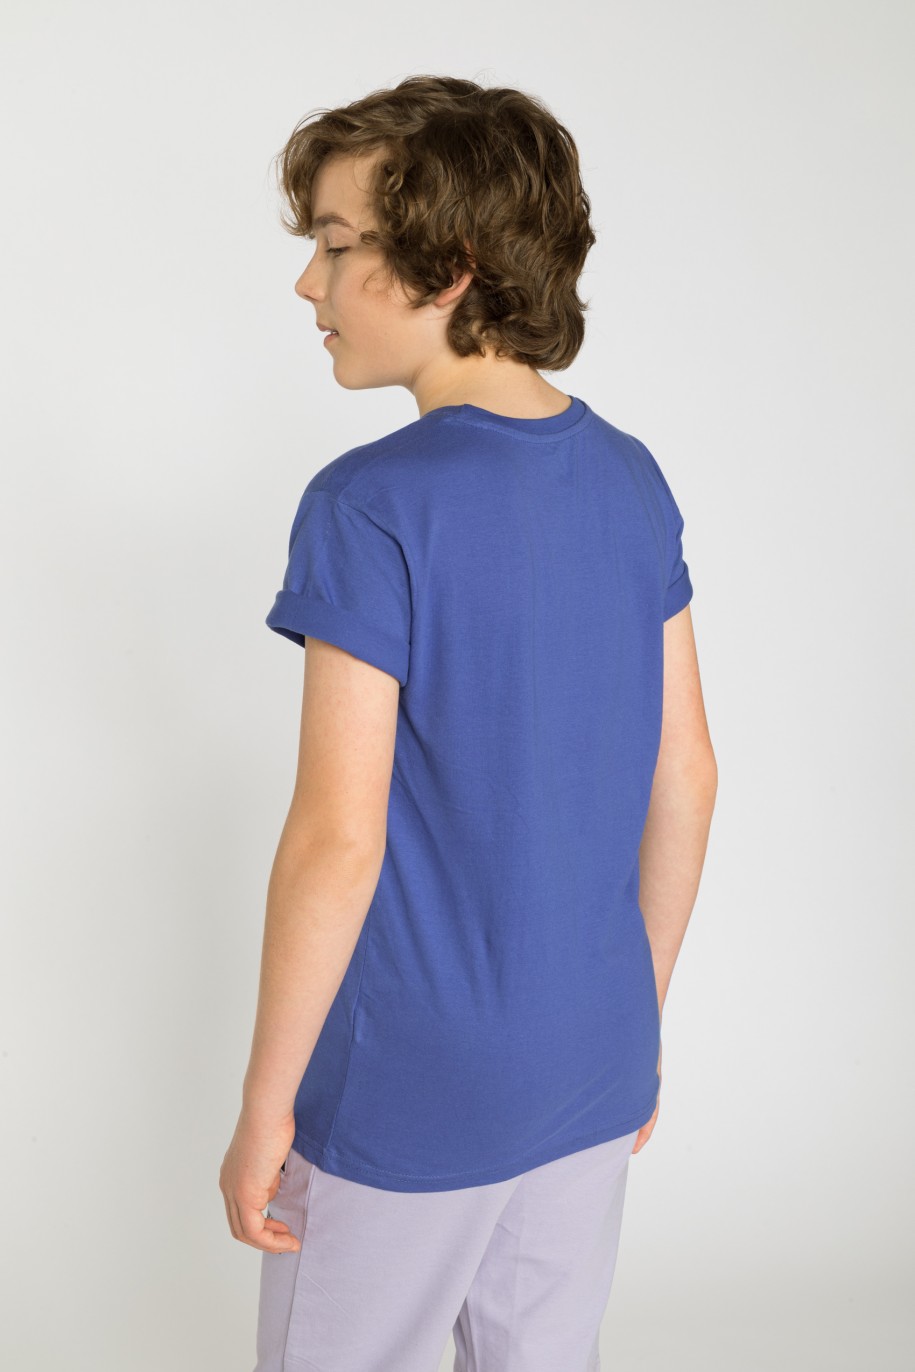 Niebieski t-shirt z nadrukiem dla chłopaka - 33907